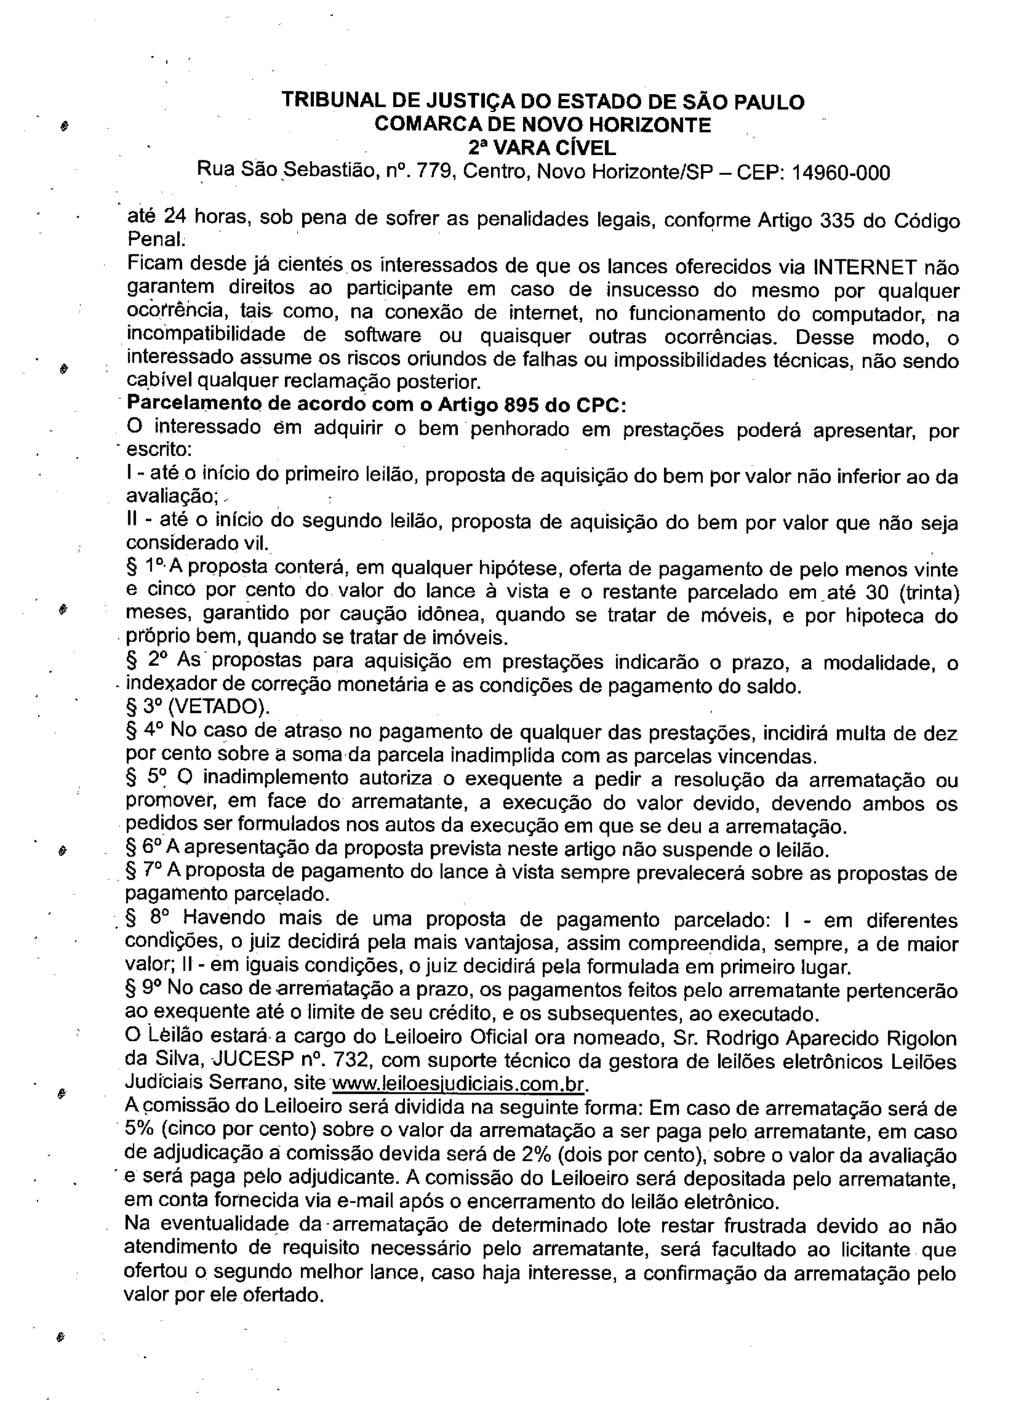 fls. 107 Este documento é cópia do original, assinado digitalmente por LUZIA REGIS DE OLIVEIRA DUARTE, liberado nos autos em 19/06/2019 às 13:14.